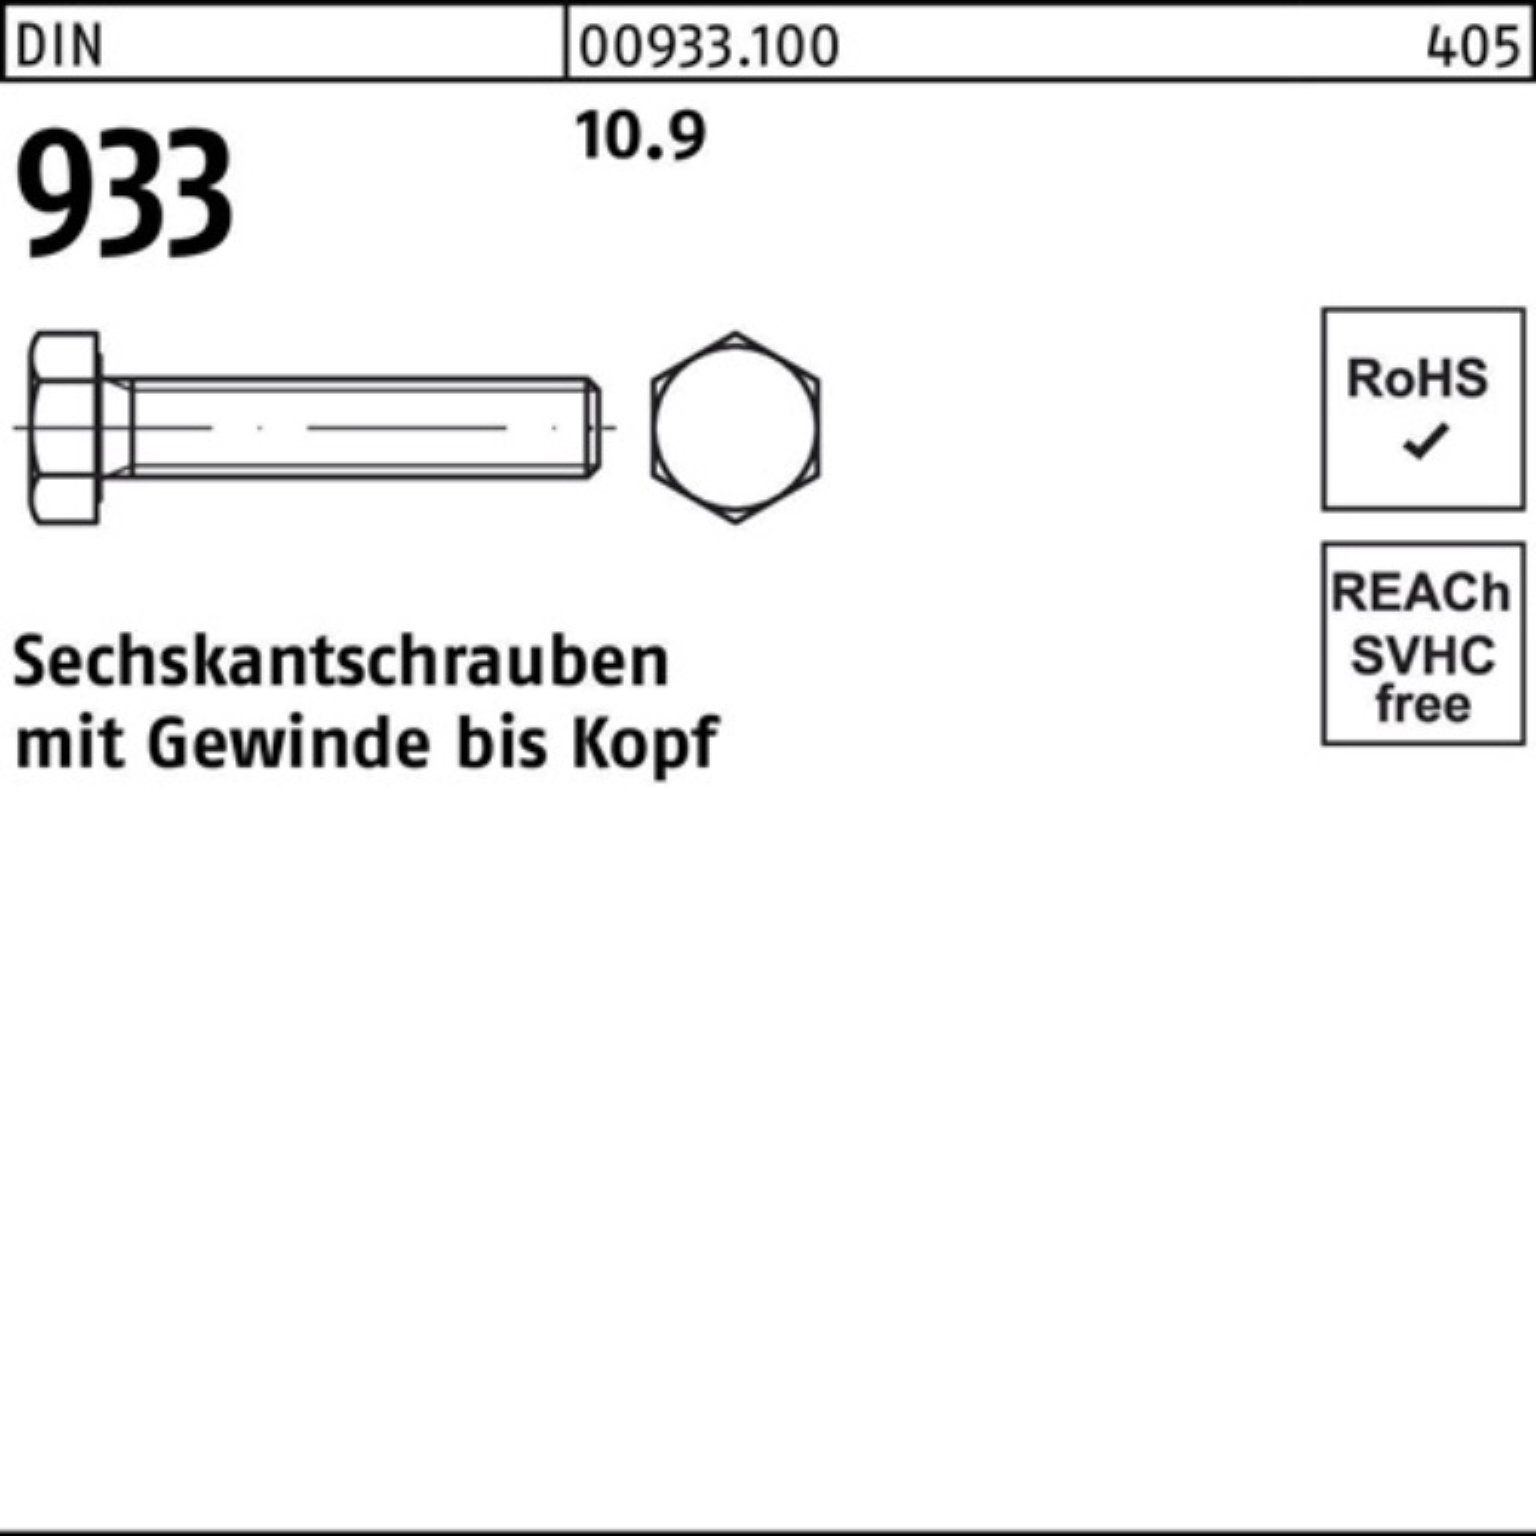 Reyher Sechskantschraube 200er Sechskantschraube Stück Pack 933 75 DIN 200 933 VG M8x 10.9 DIN